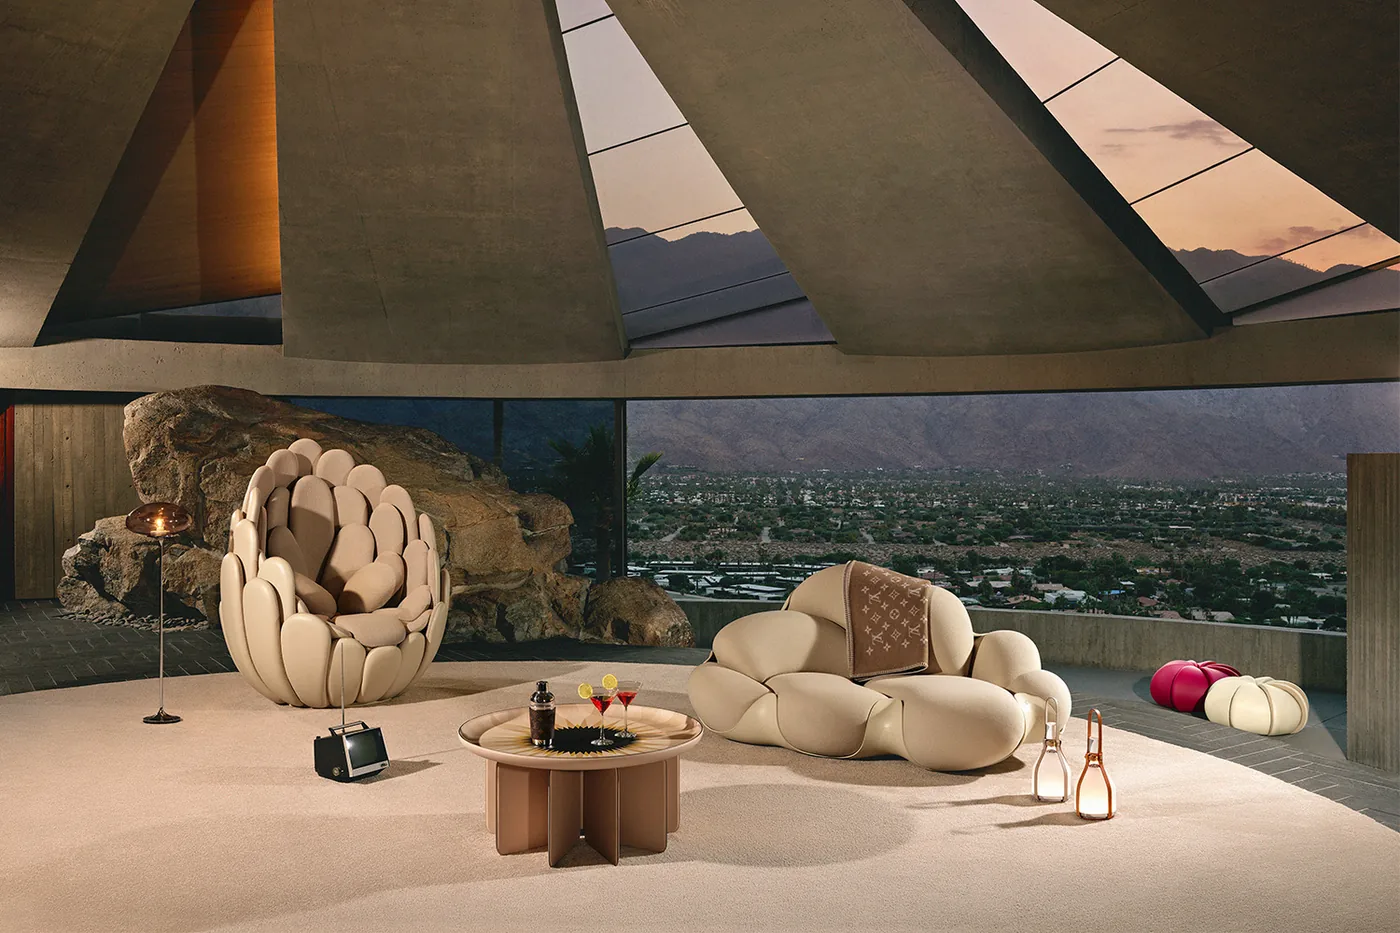 Louis Vuitton 全新 Objets Nomades 生活艺术家俱系列正式登陆米兰设计周